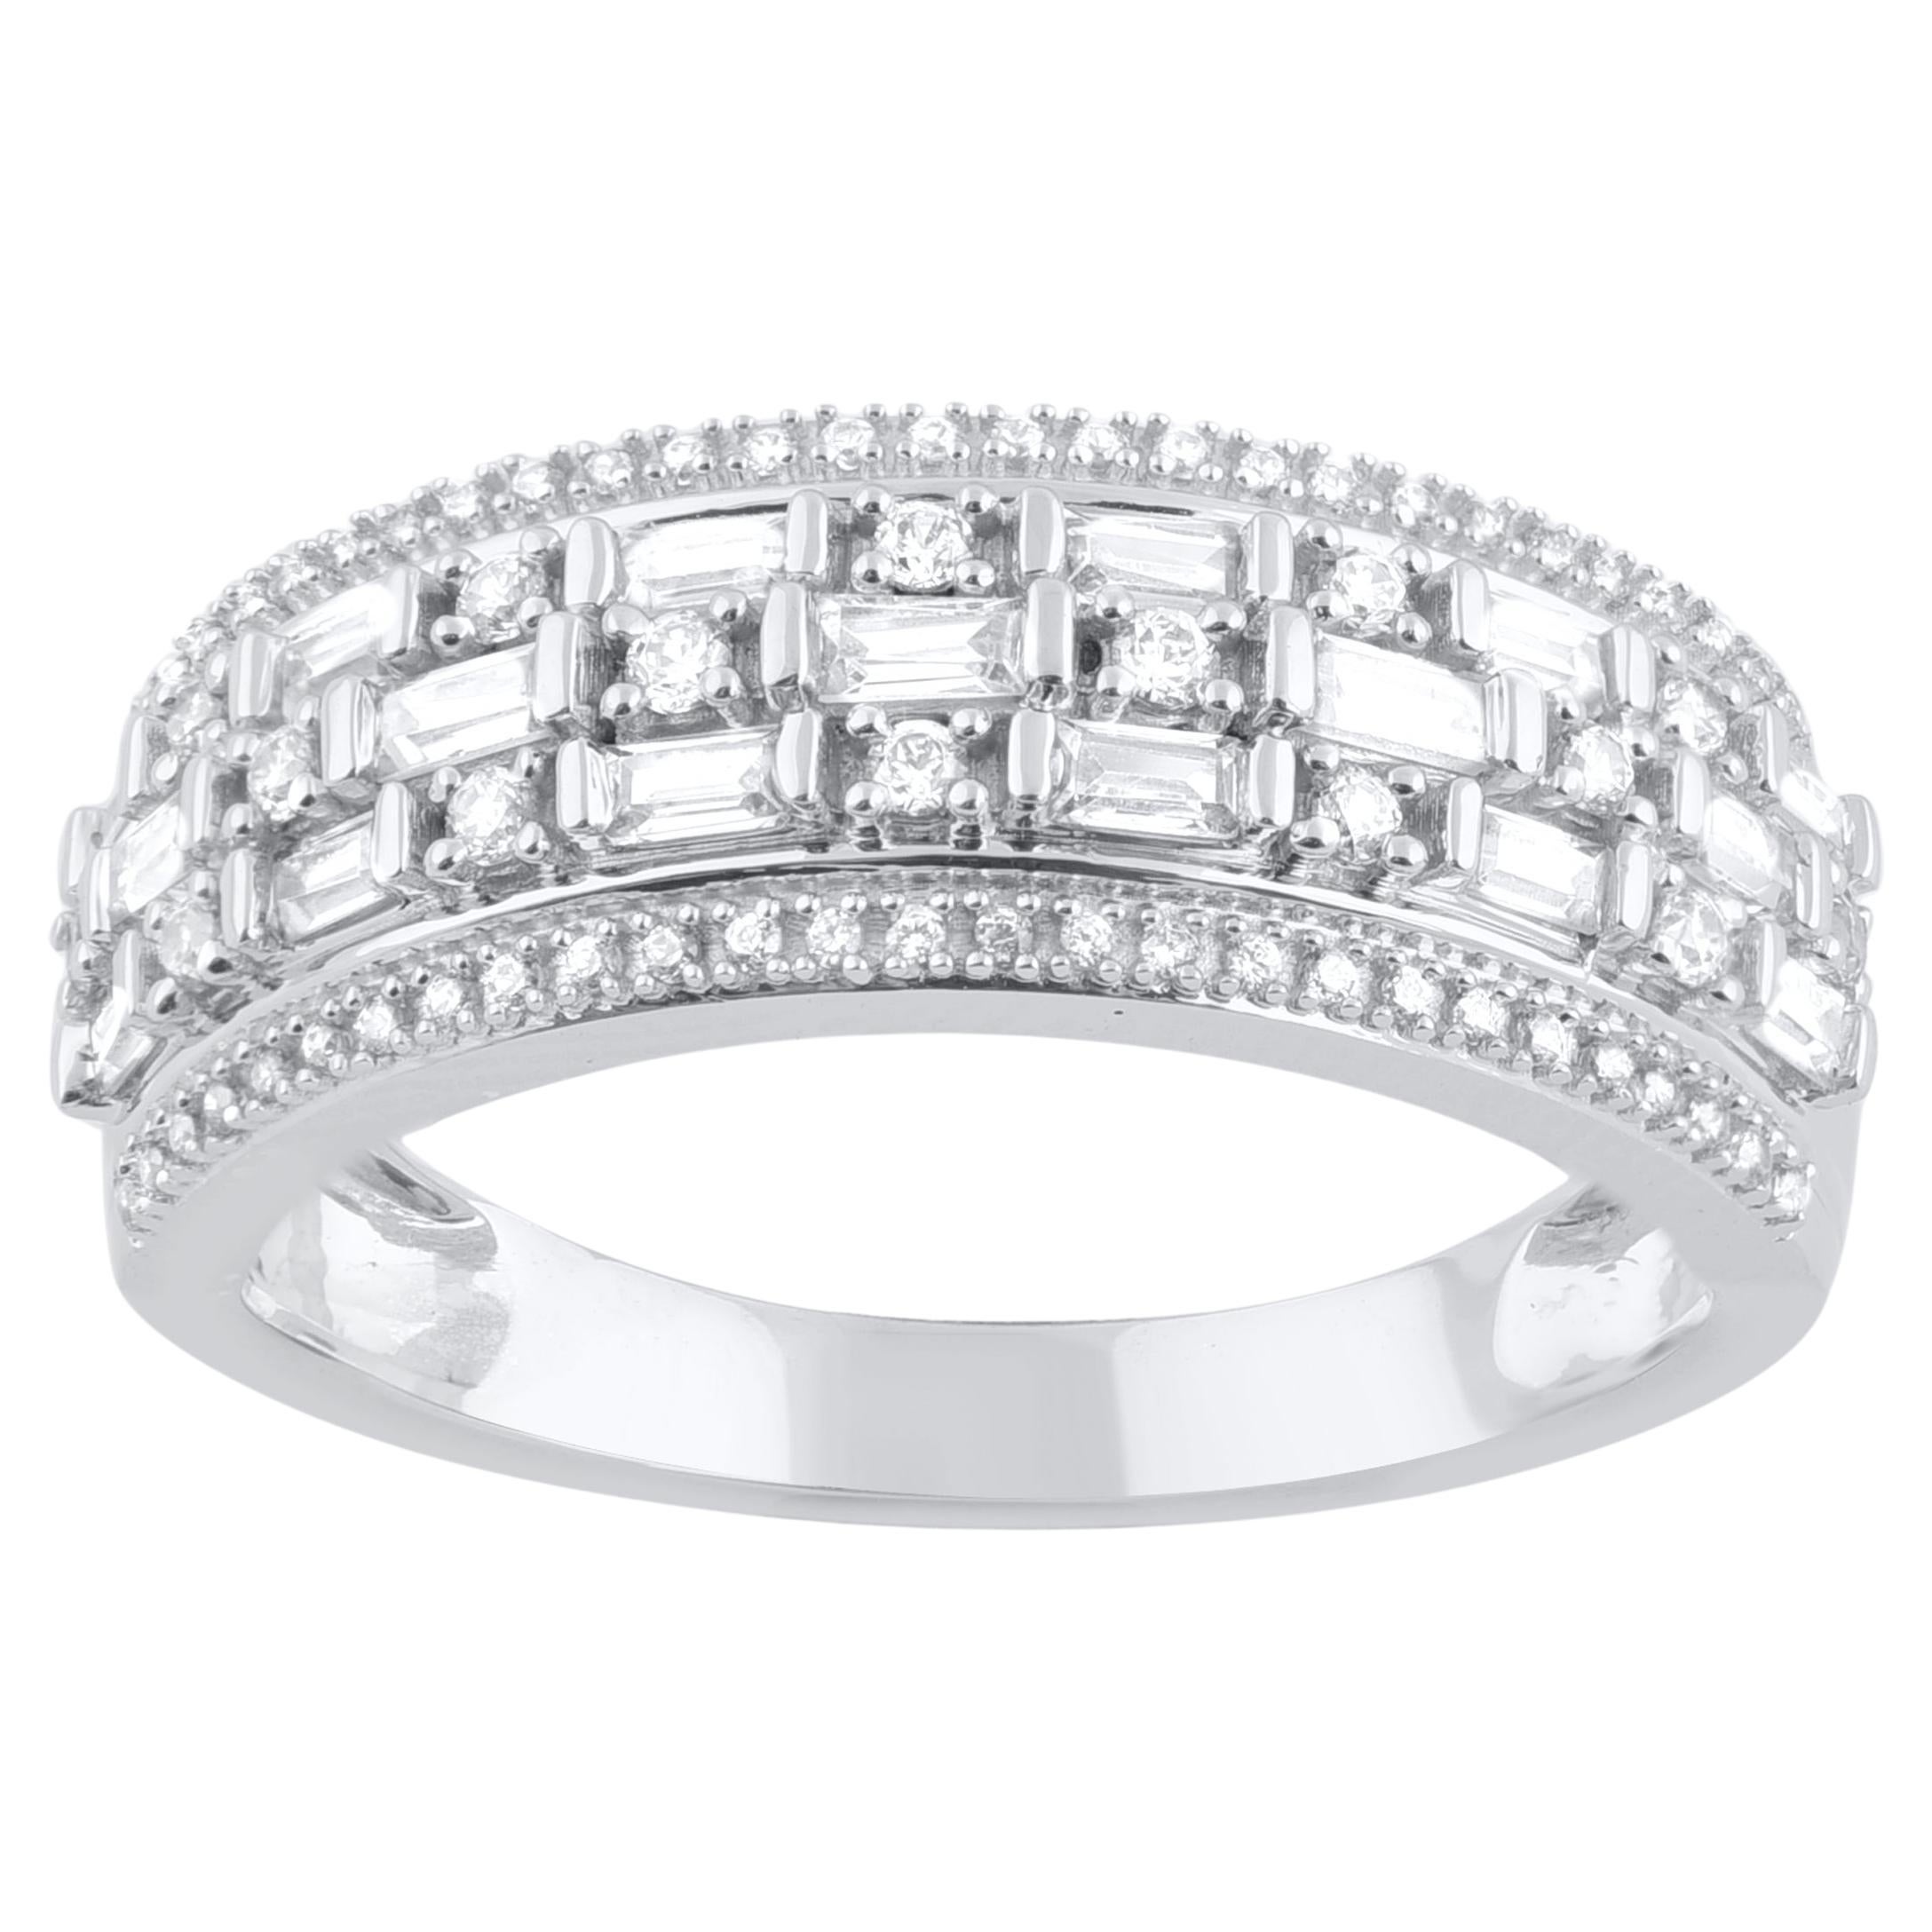 TJD 0.50 Carat Natural Diamond Wedding Band Ring in 14 Karat White Gold For Sale